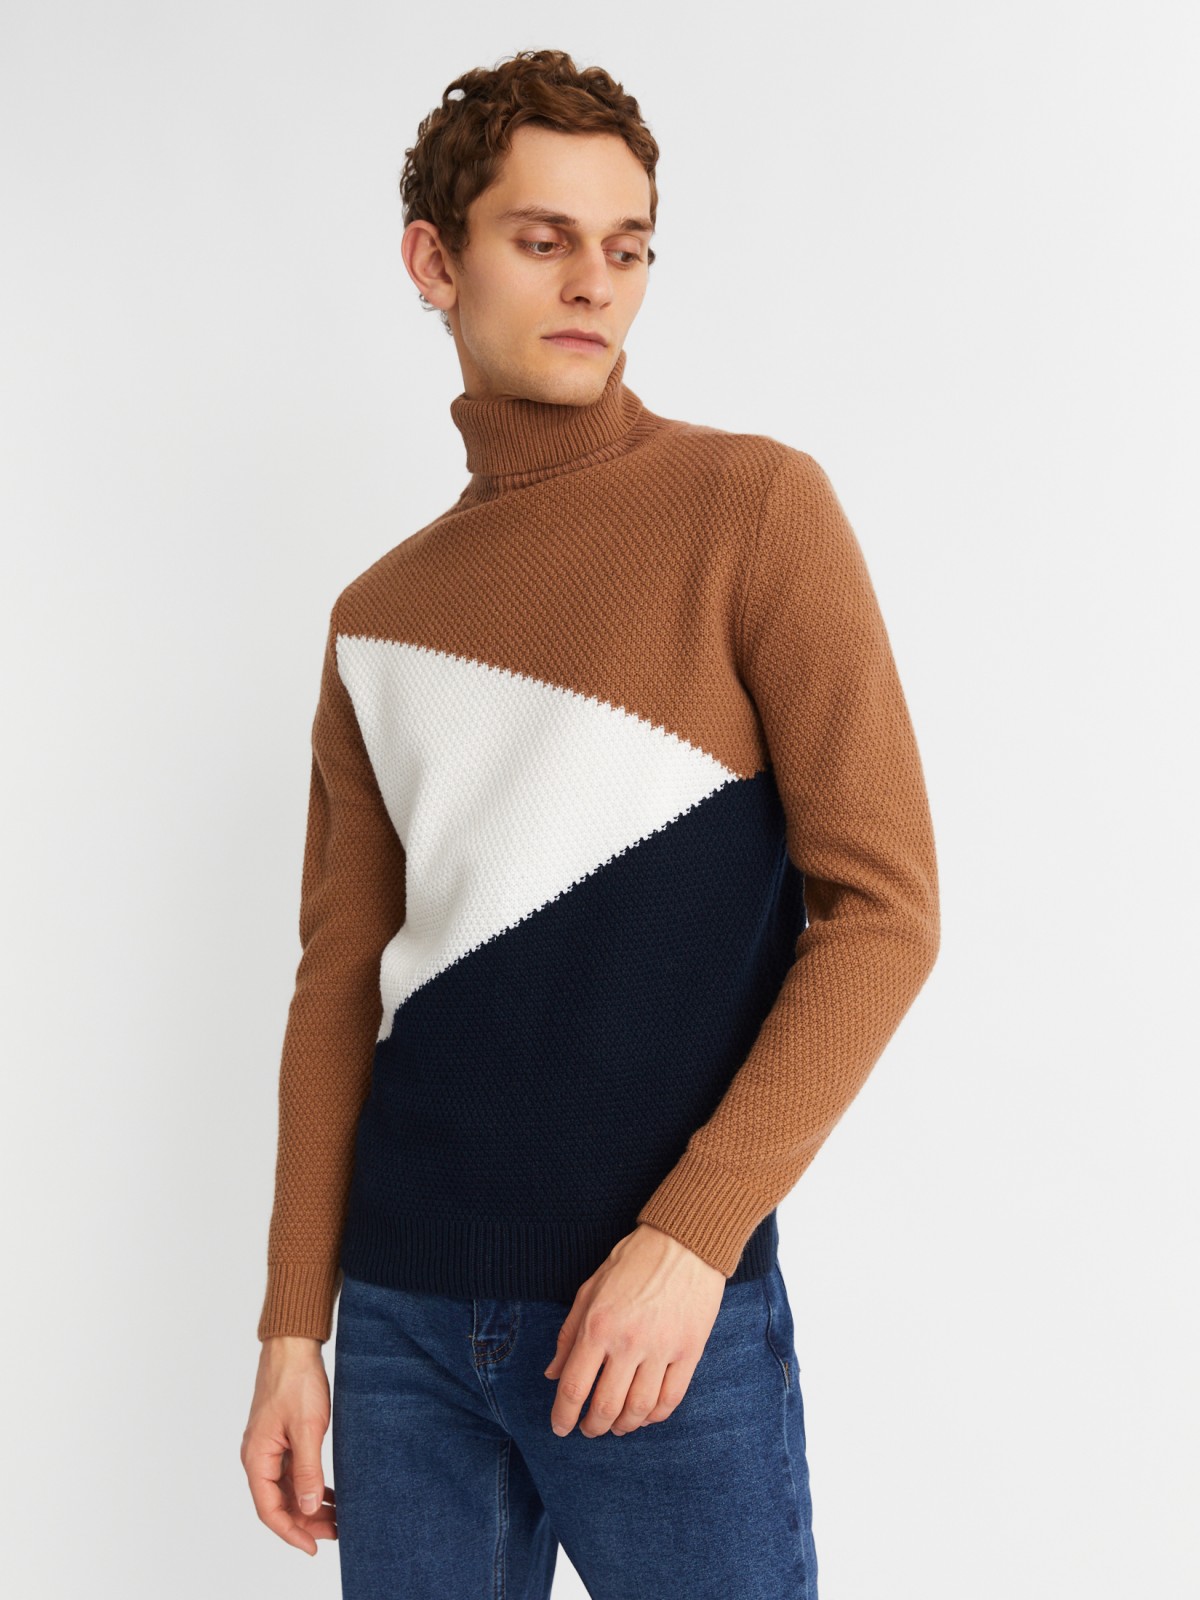 Вязаная шерстяная водолазка-свитер в стиле Color Block zolla 013436101101, цвет коричневый, размер M